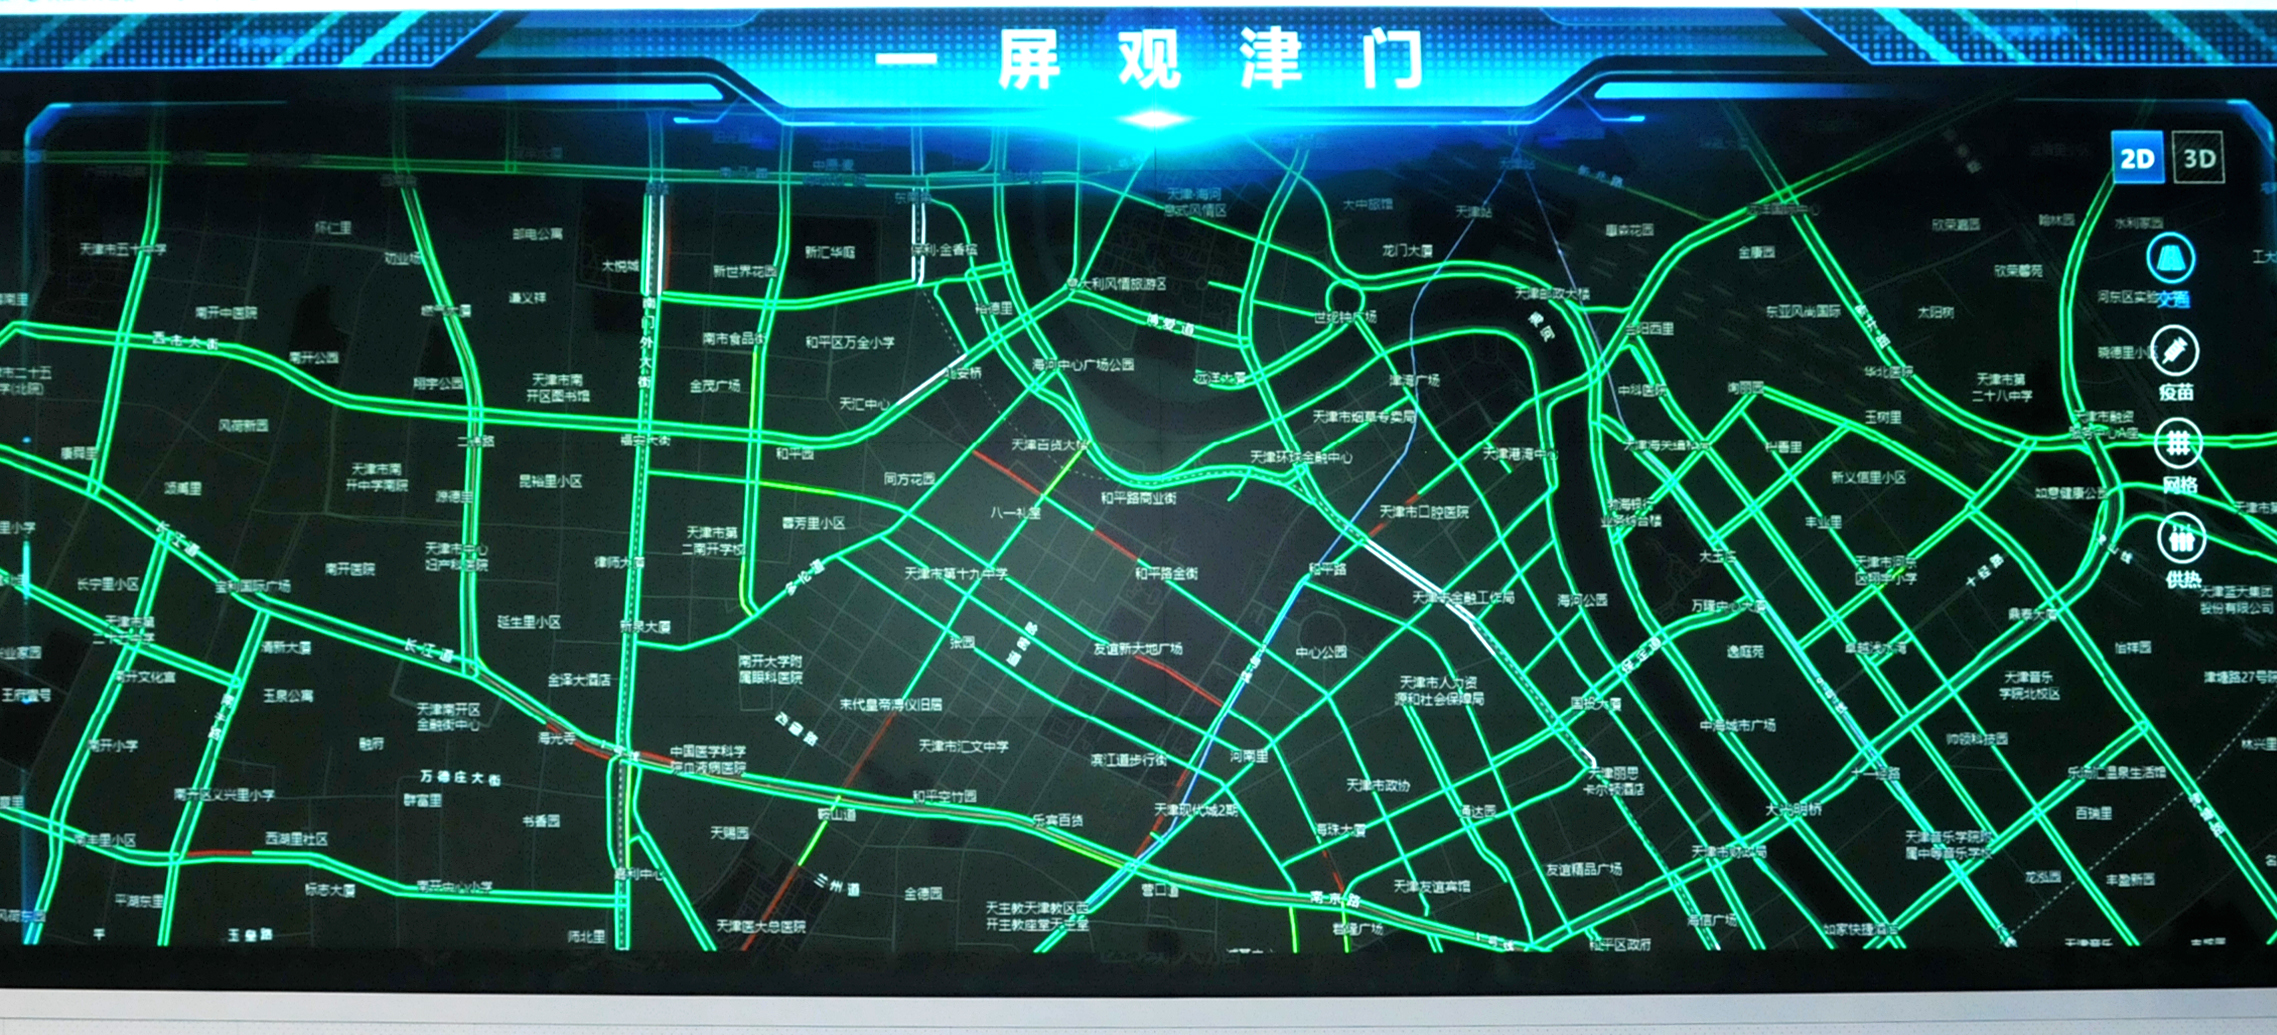 【众智成城】天津“城市大脑”打造会思考的城市